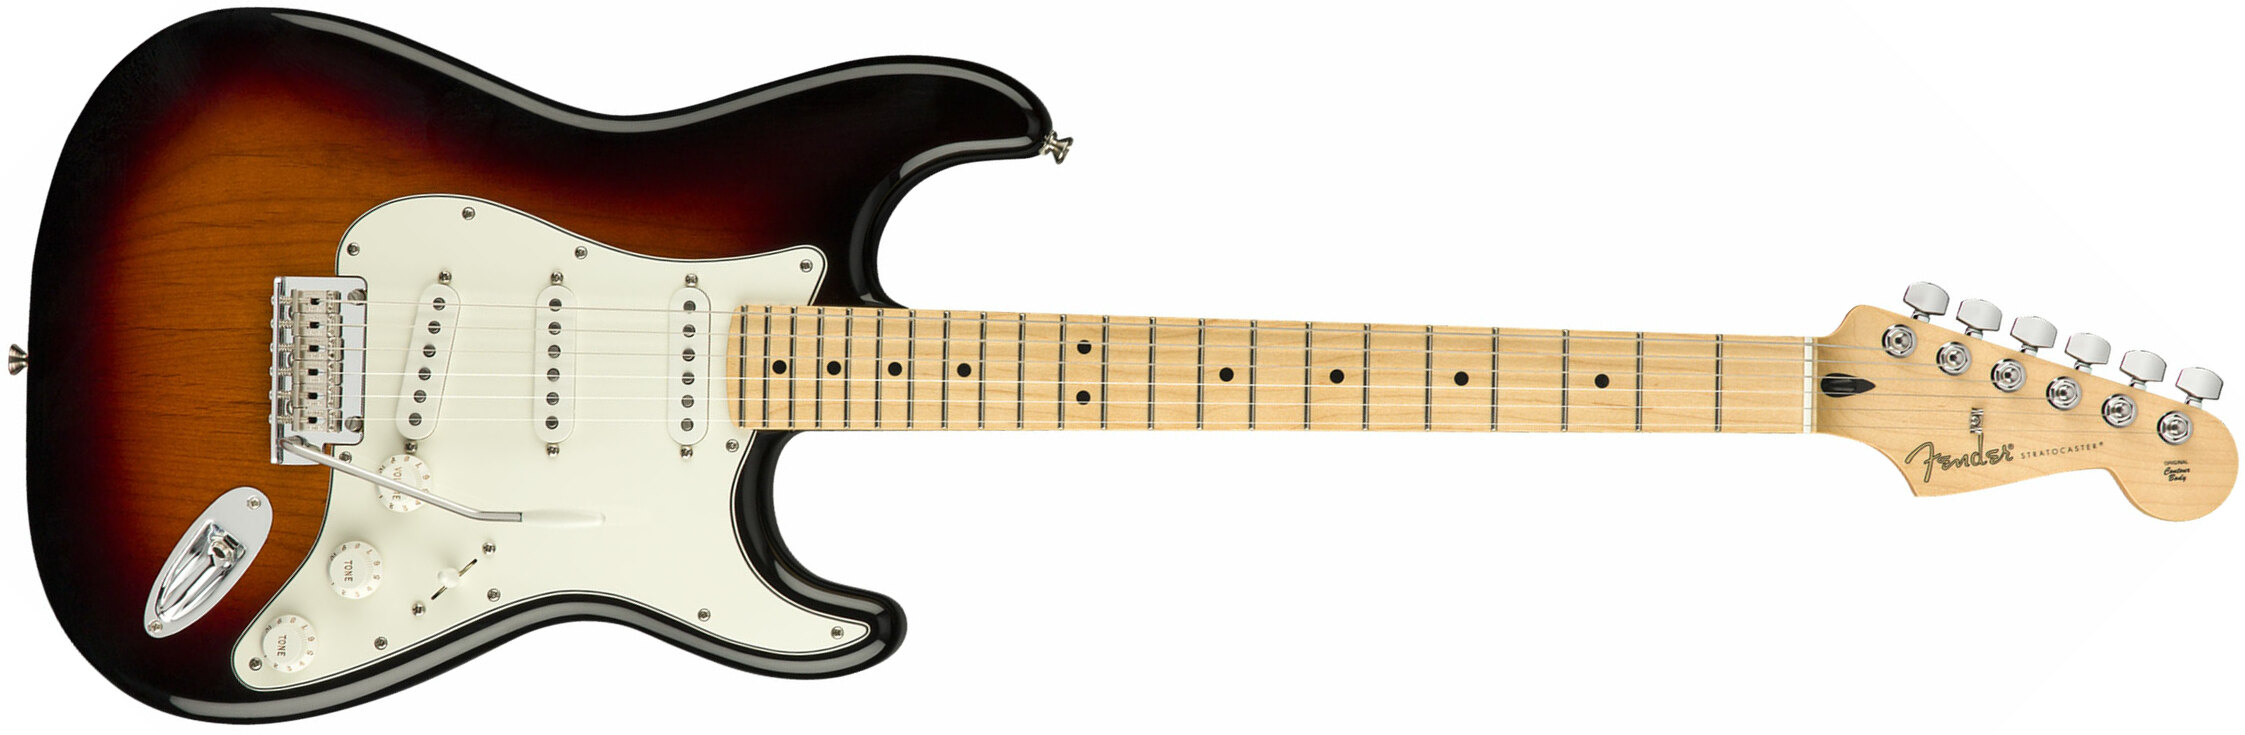 Fender Strat Player Mex Sss Mn - 3-color Sunburst - Elektrische gitaar in Str-vorm - Main picture